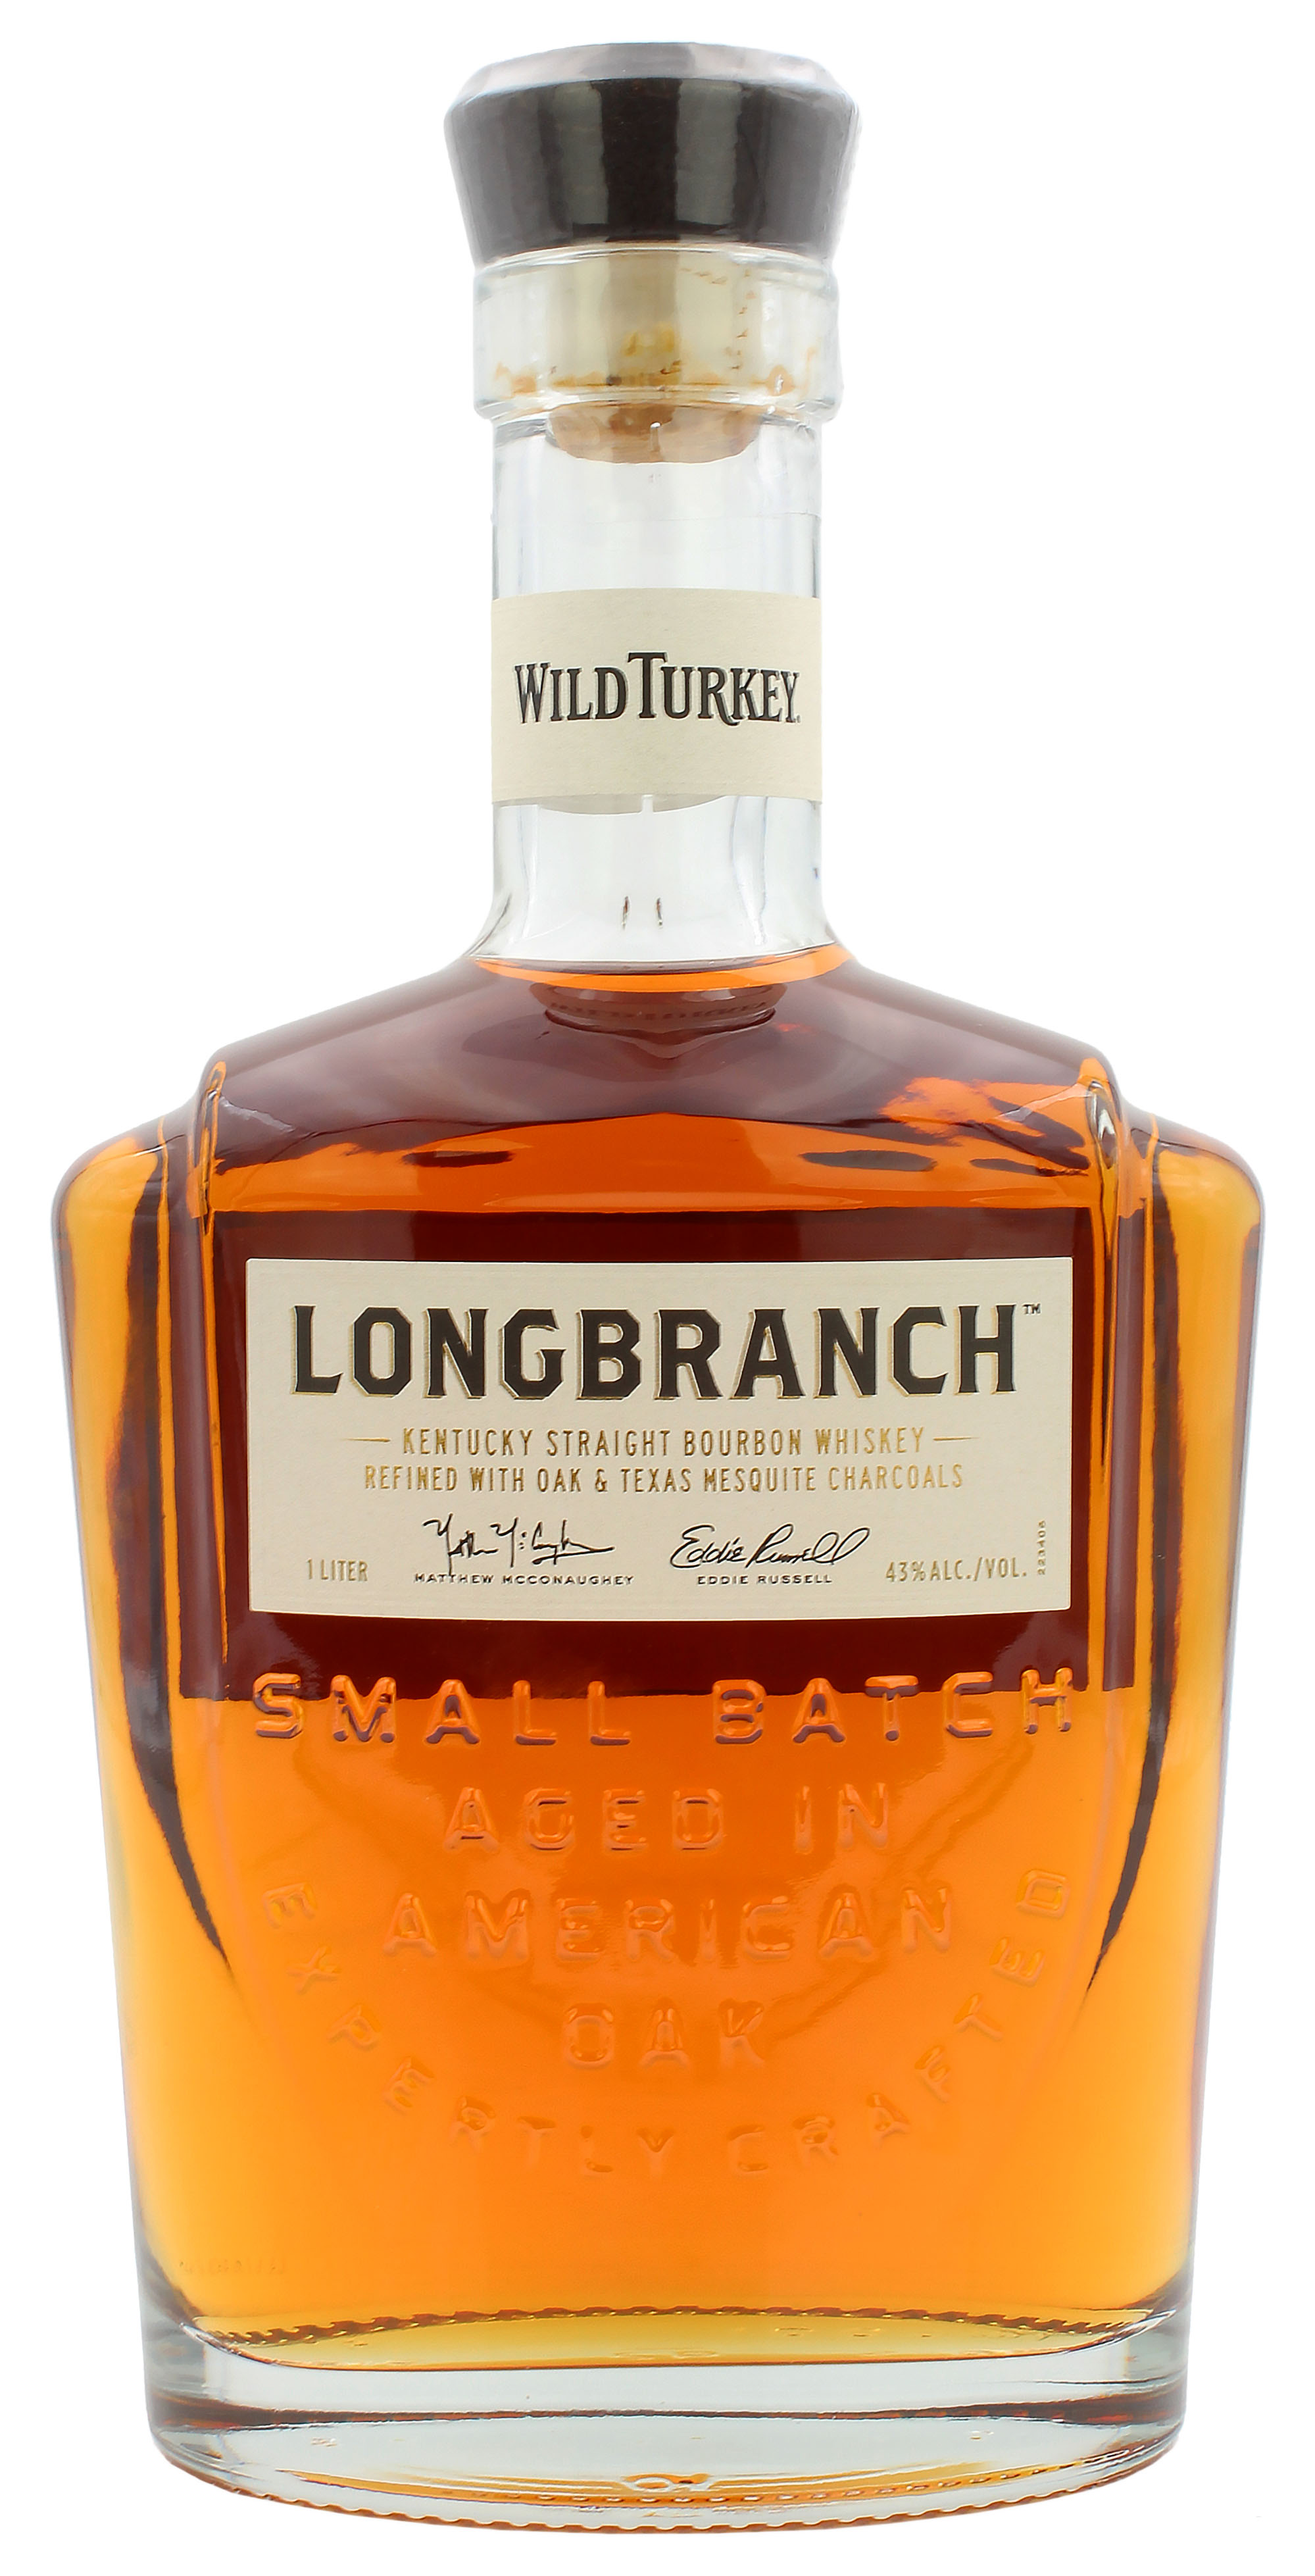 Wild Turkey Longbranch 43.0% 1 Liter